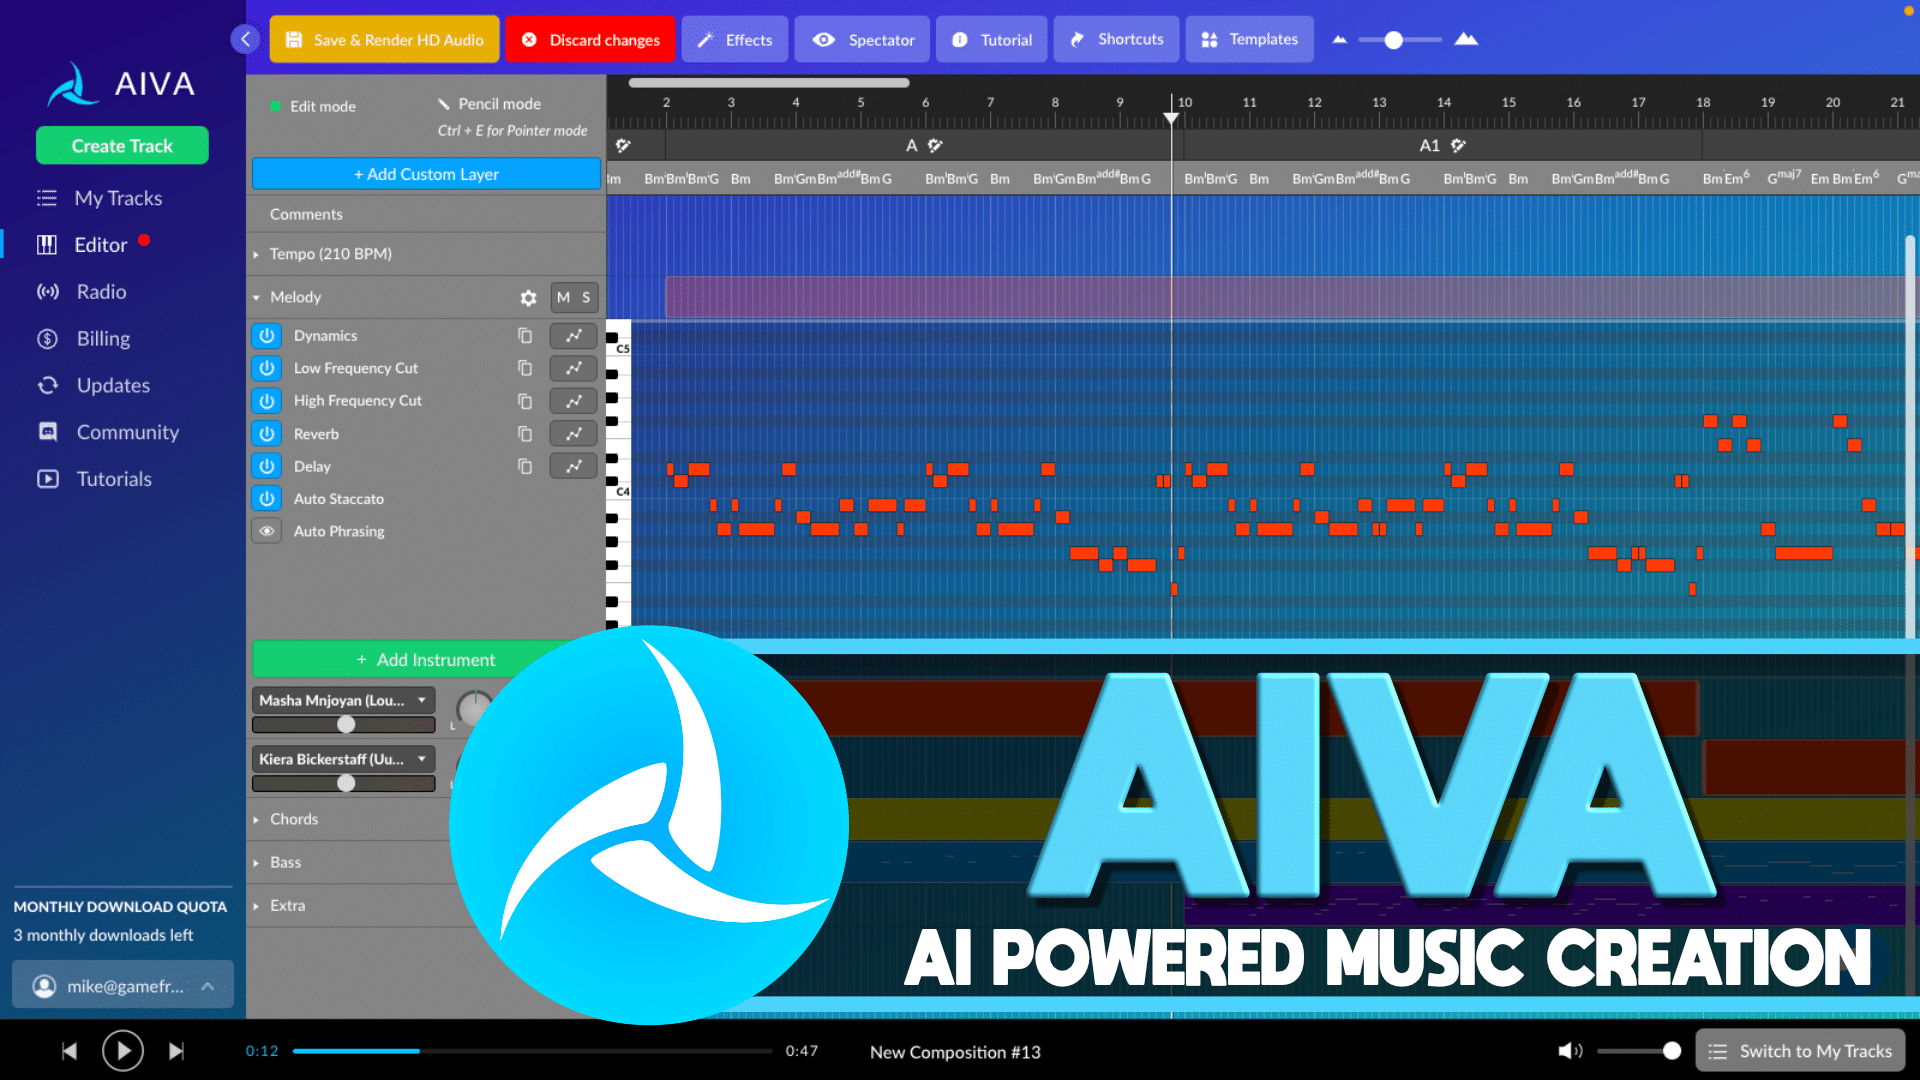 AVIA
La Inteligencia Artificial componiendo música de banda sonora emocional